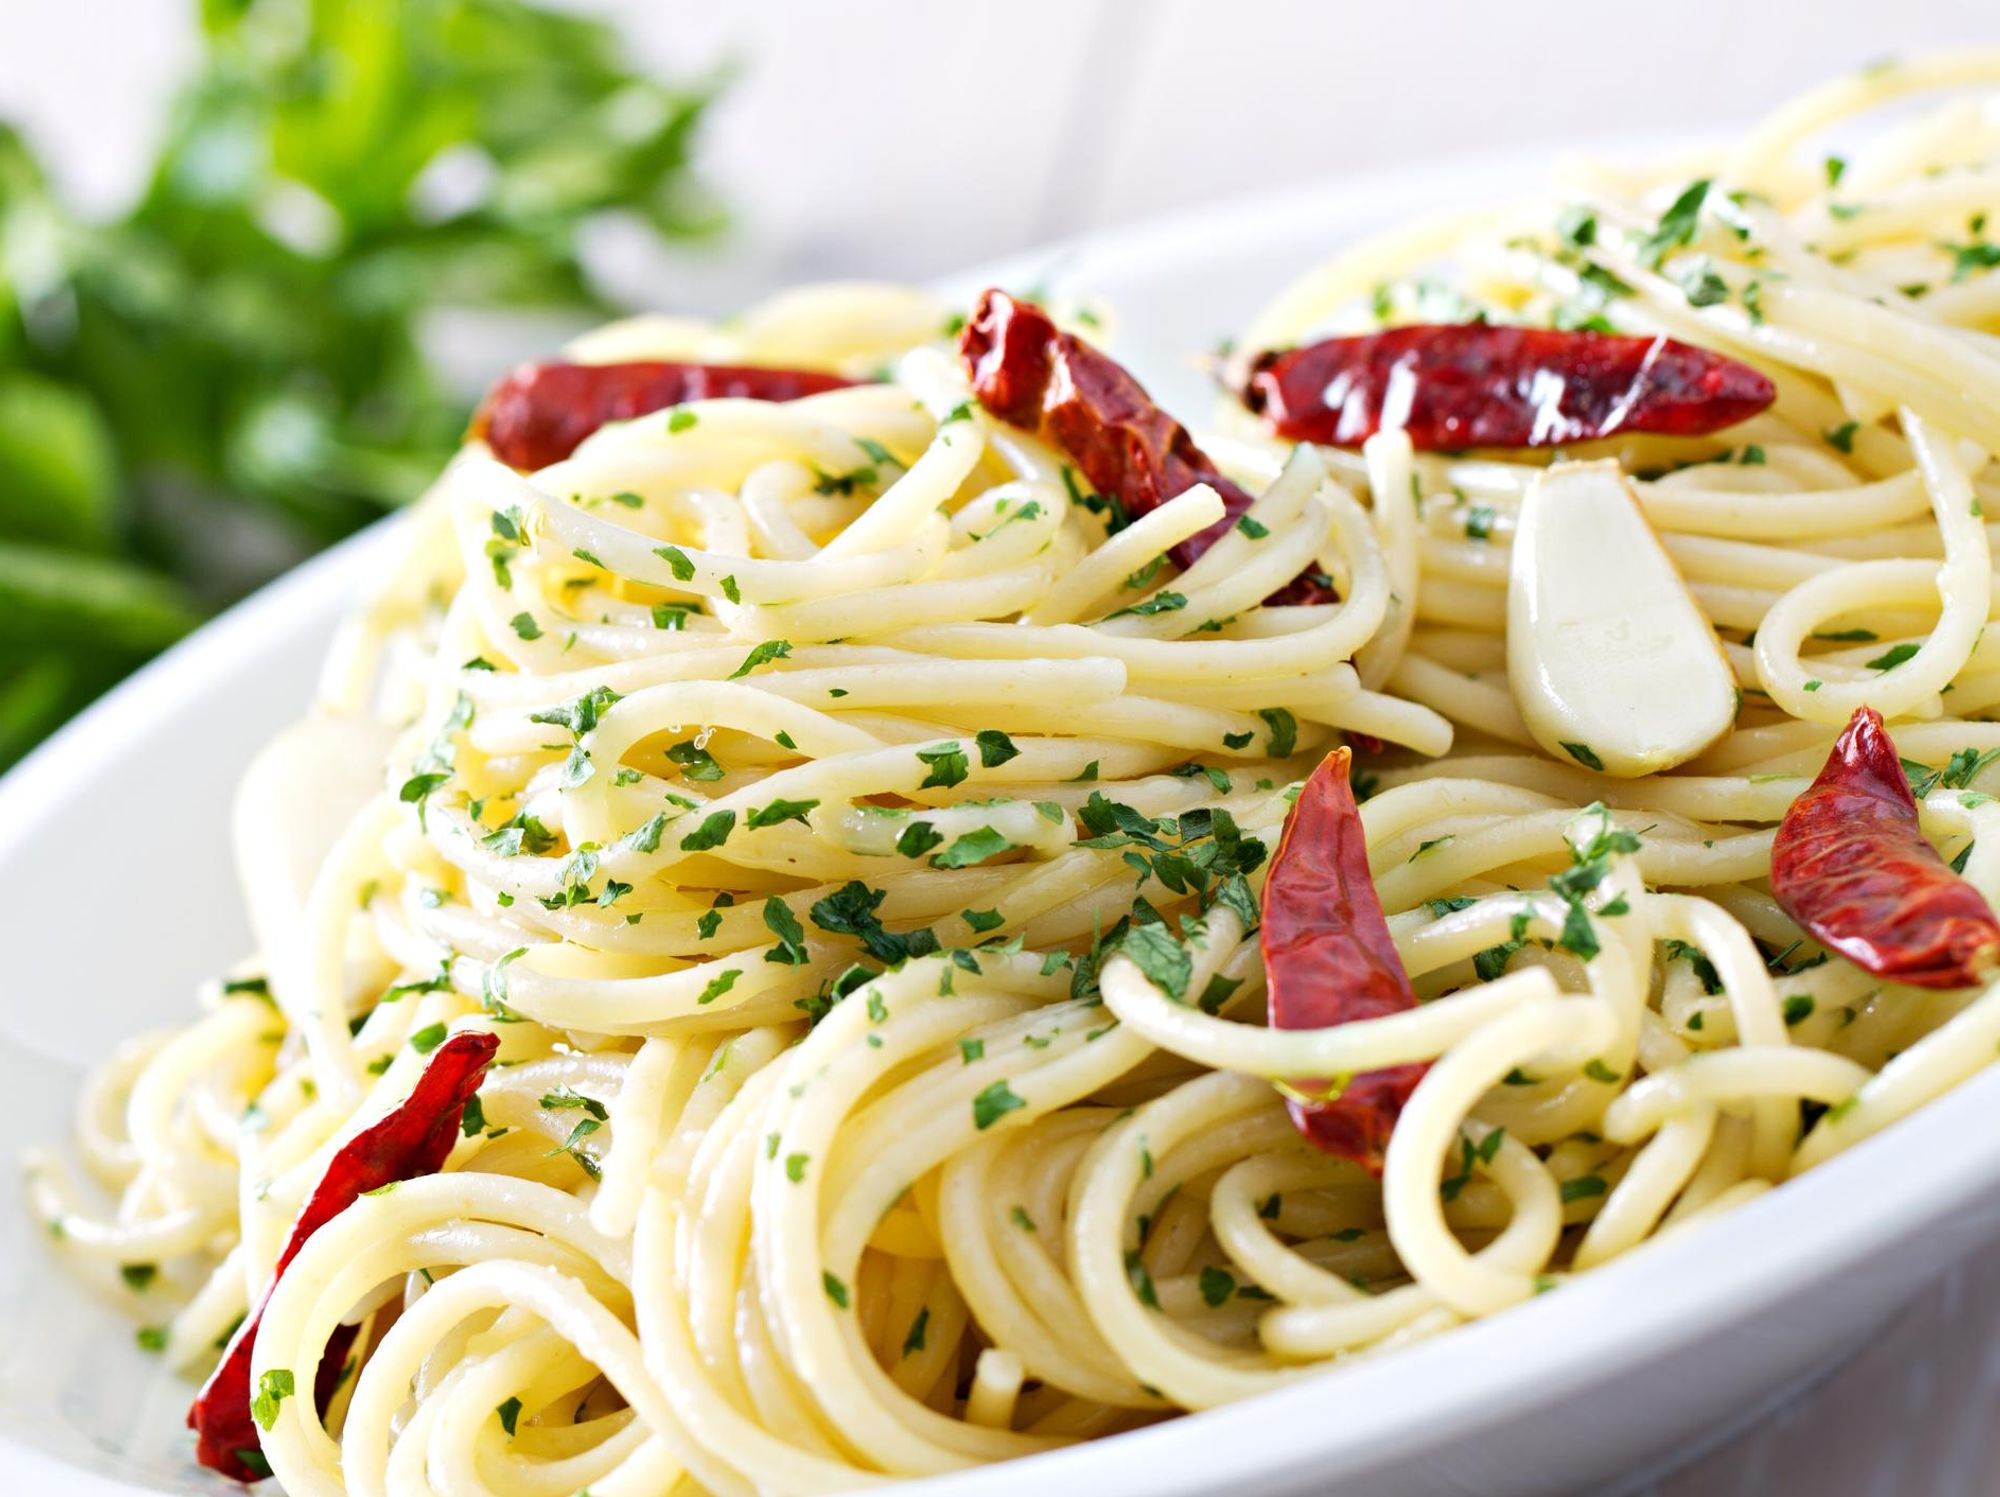 Spaghetti aglio, olio, peperoncino